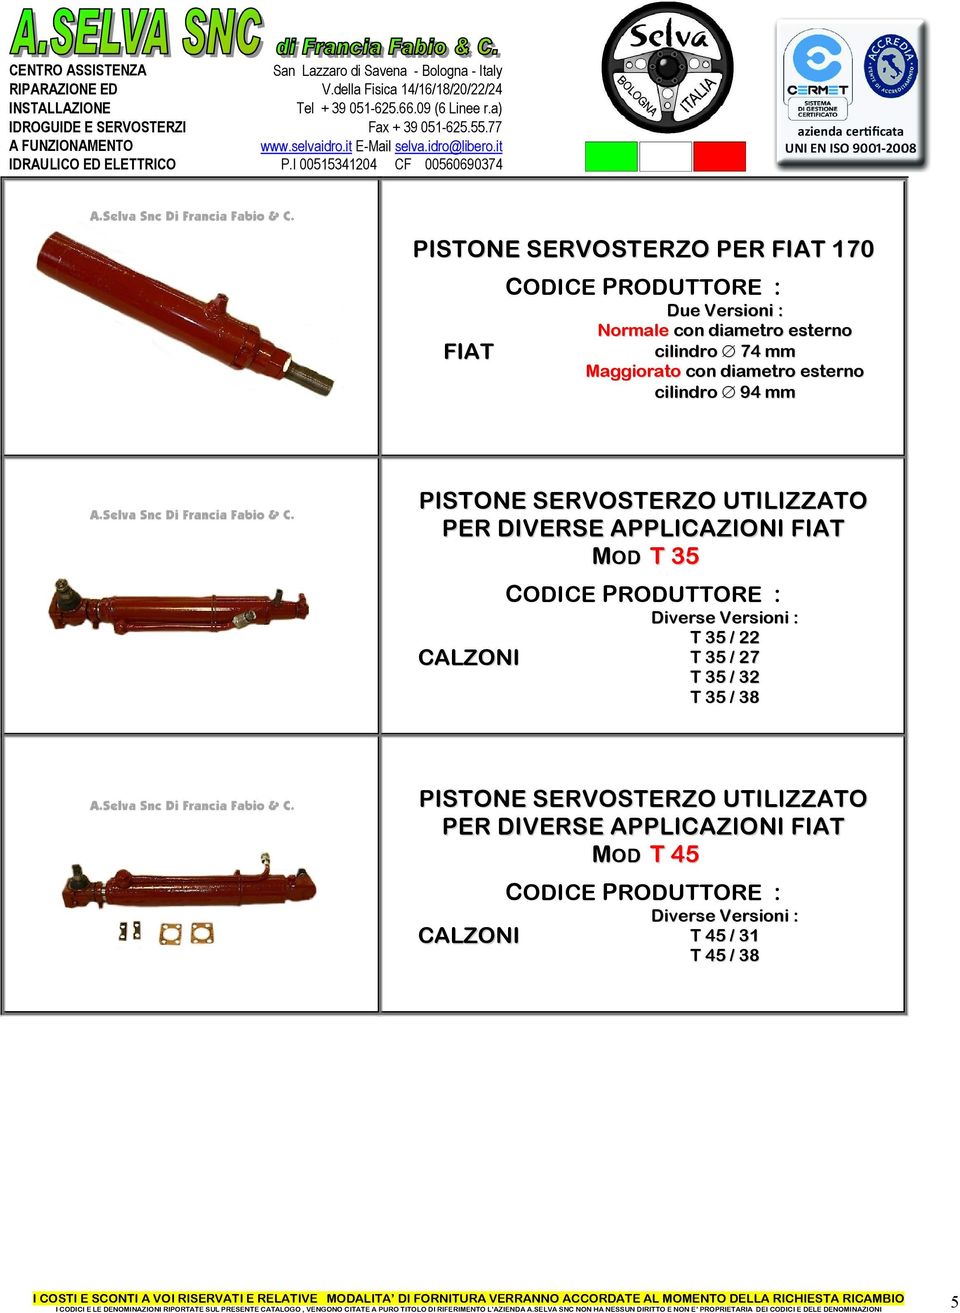 APPLICAZIONI FIAT MOD T 35 CALZONI Diverse Versioni : T 35 / 22 T 35 / 27 T 35 / 32 T 35 / 38